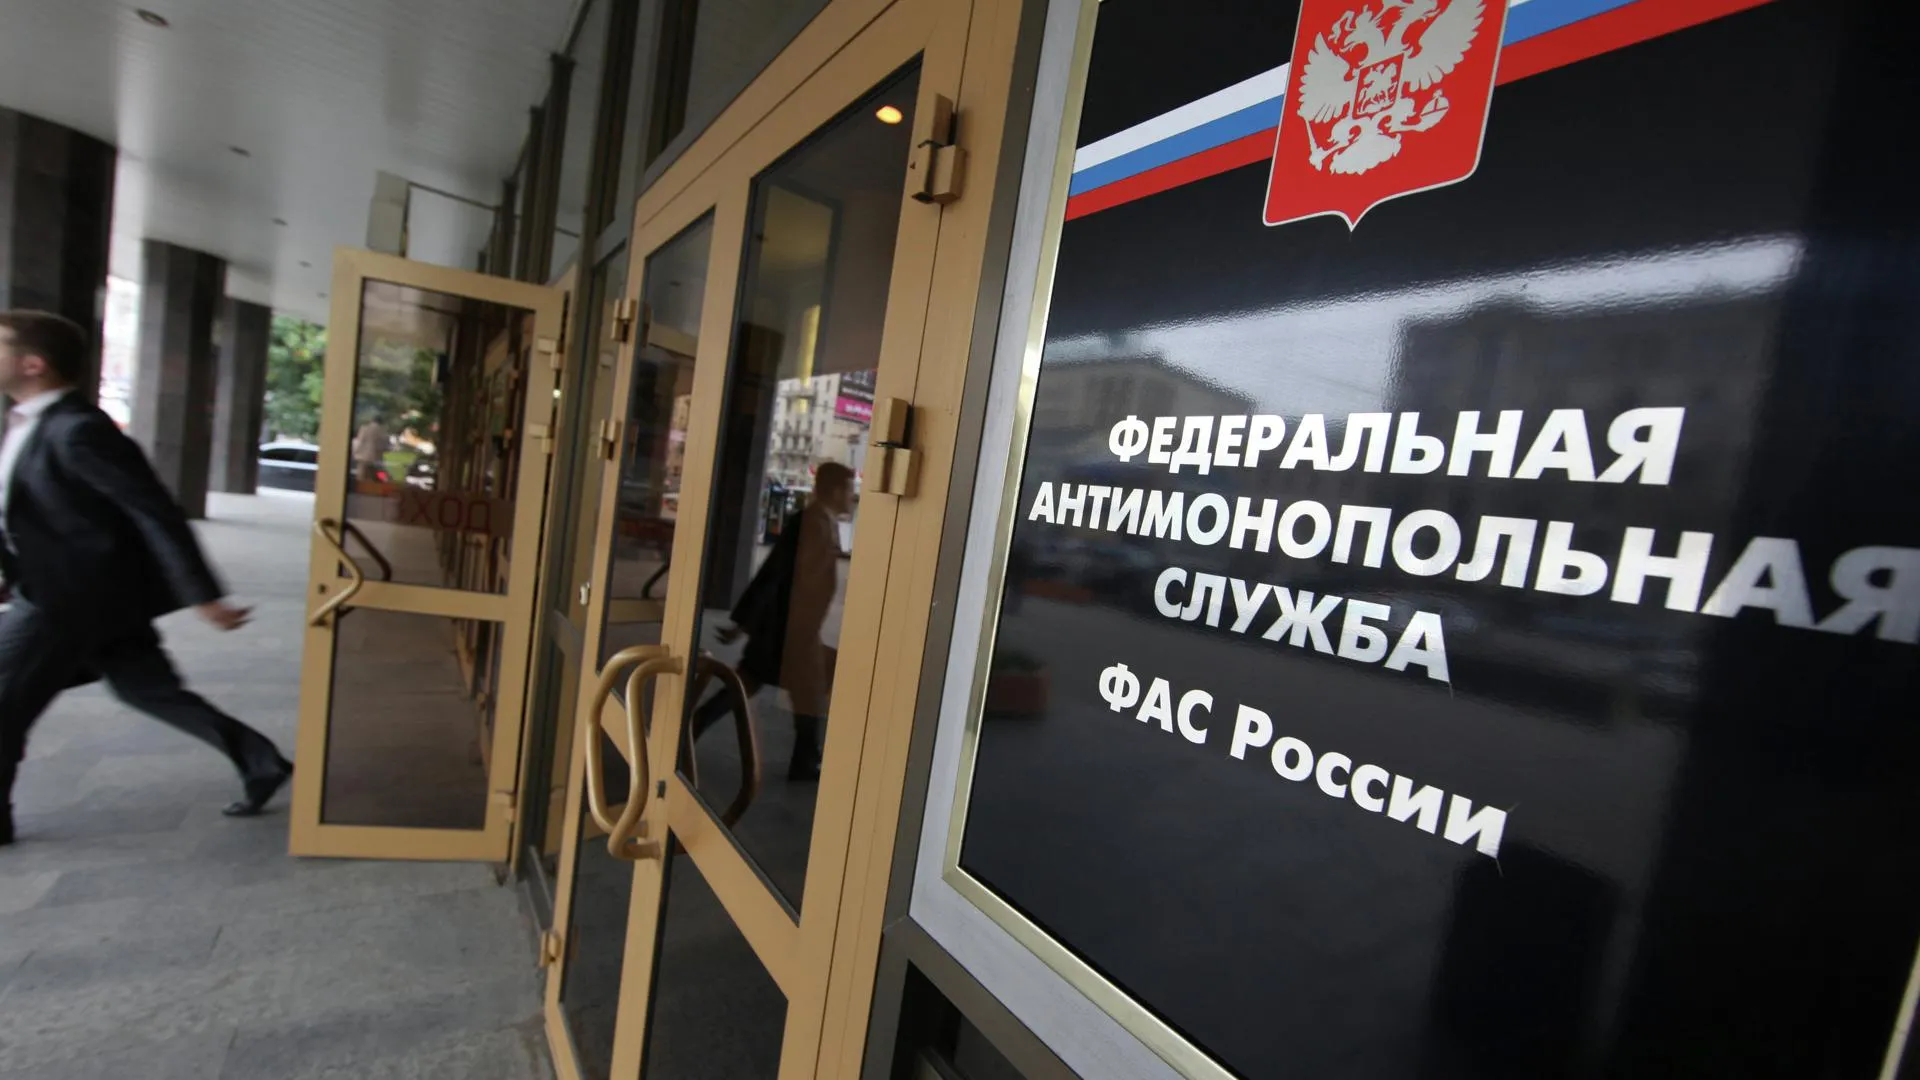 ФАС региона взыскала 4,6 млн руб штрафов за нарушения по госзаказам